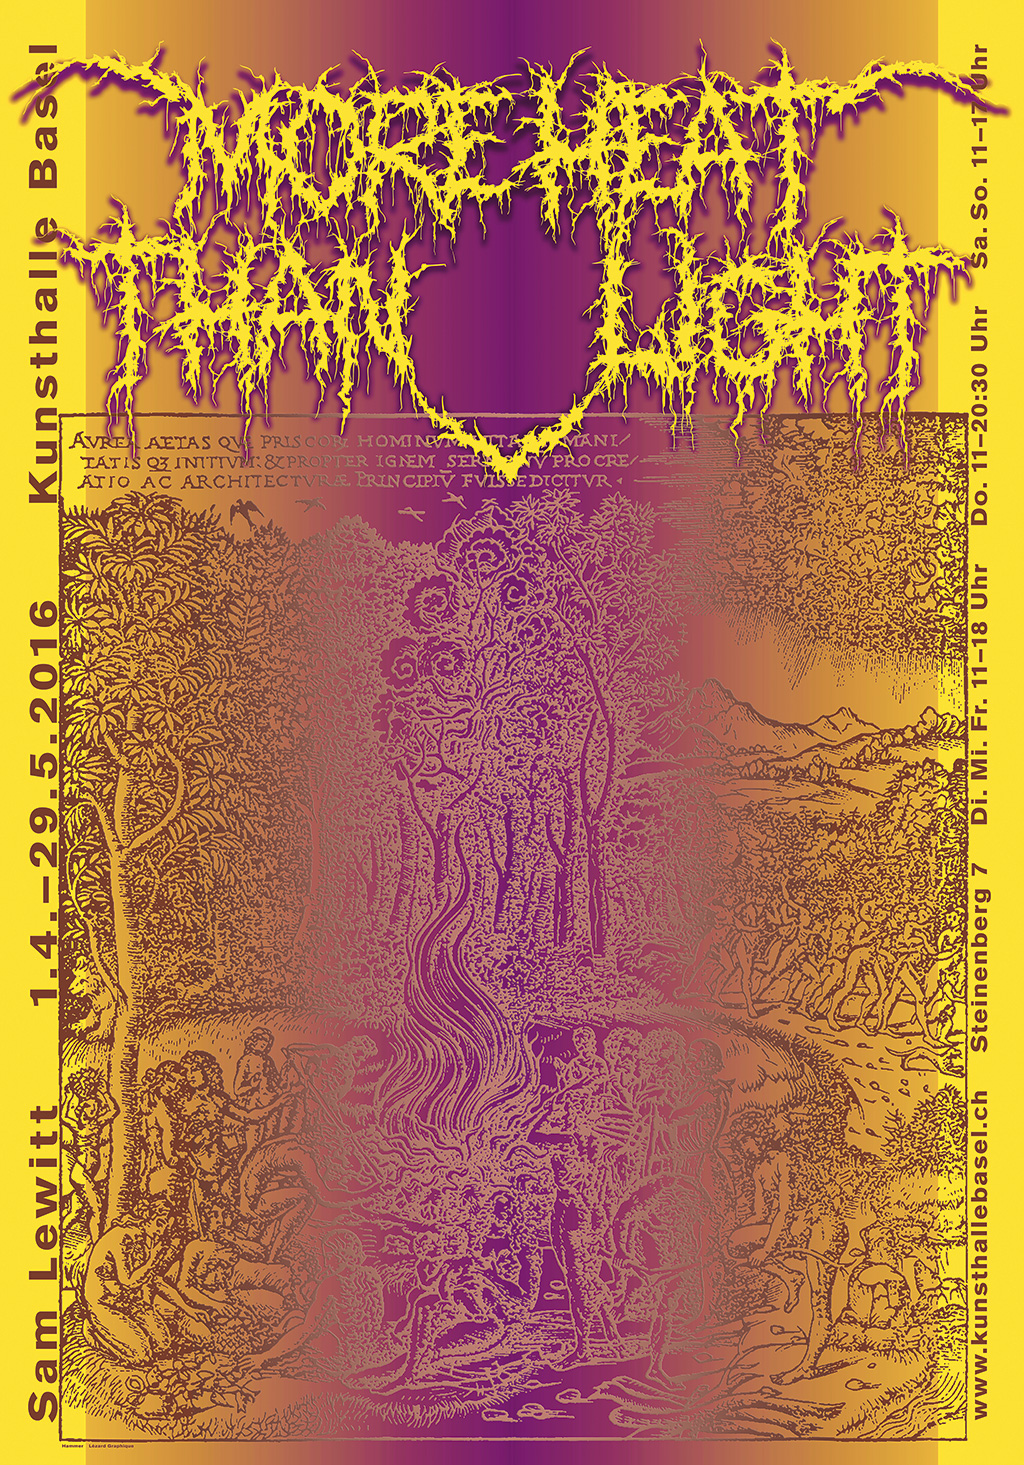 Hammer's poster for Sam Lewitt “More Heat Than Light” at Kunsthalle Basel 